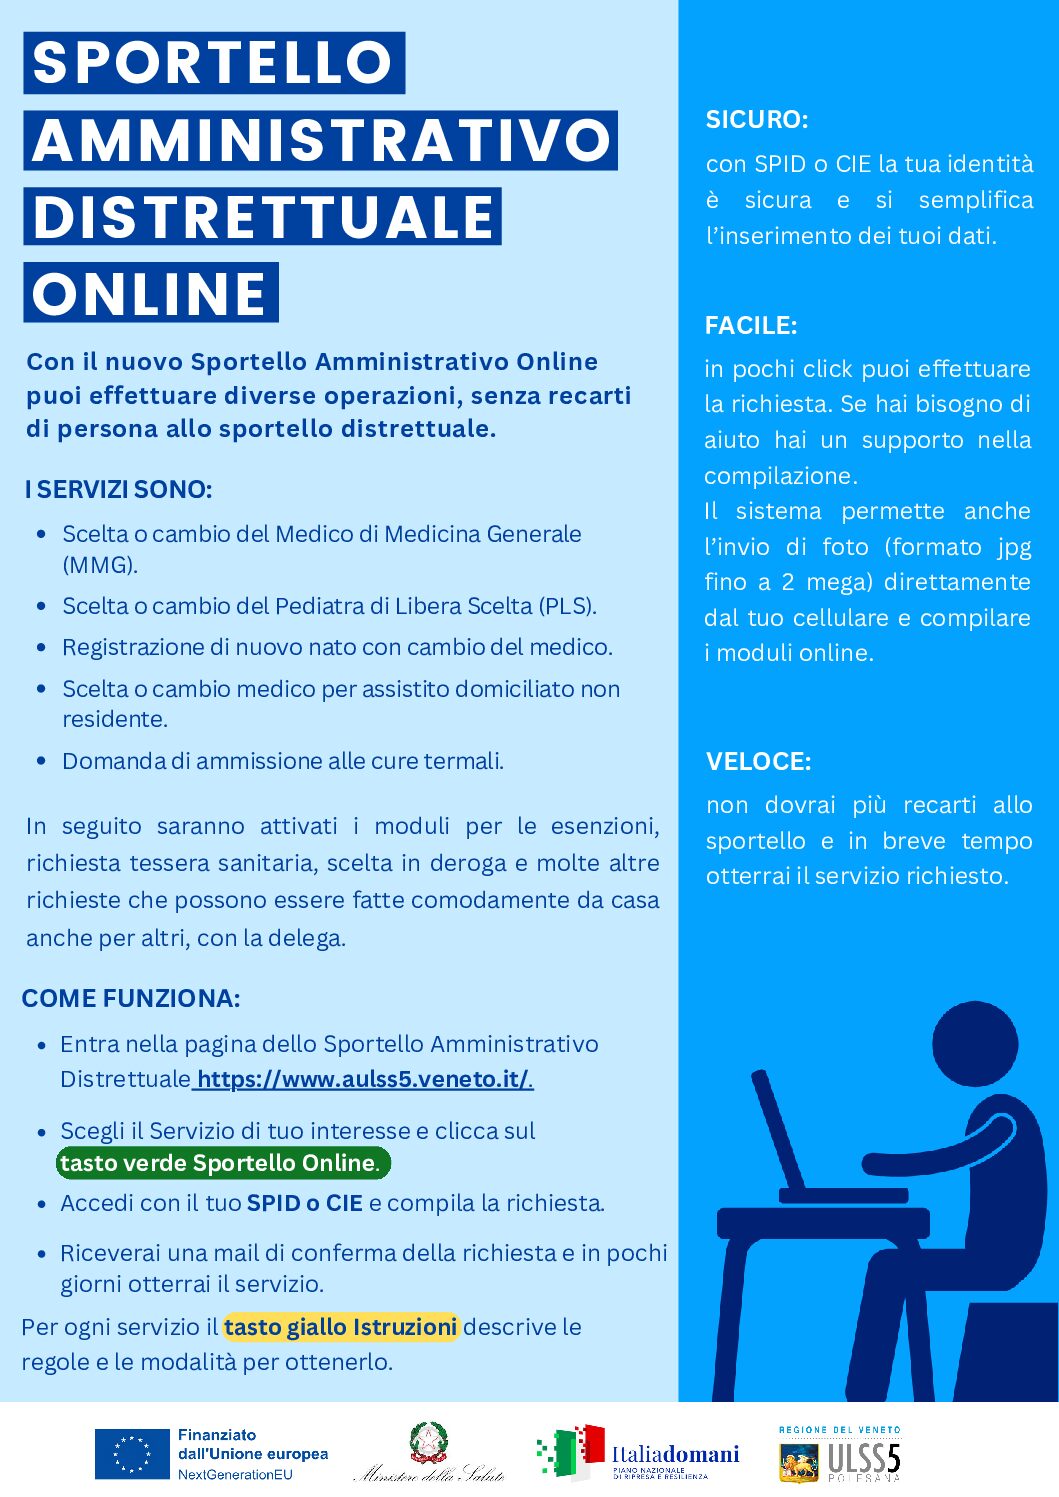 Avvio dello Sportello Amministrativo Distrettuale online Azienda ULSS5 Polesana